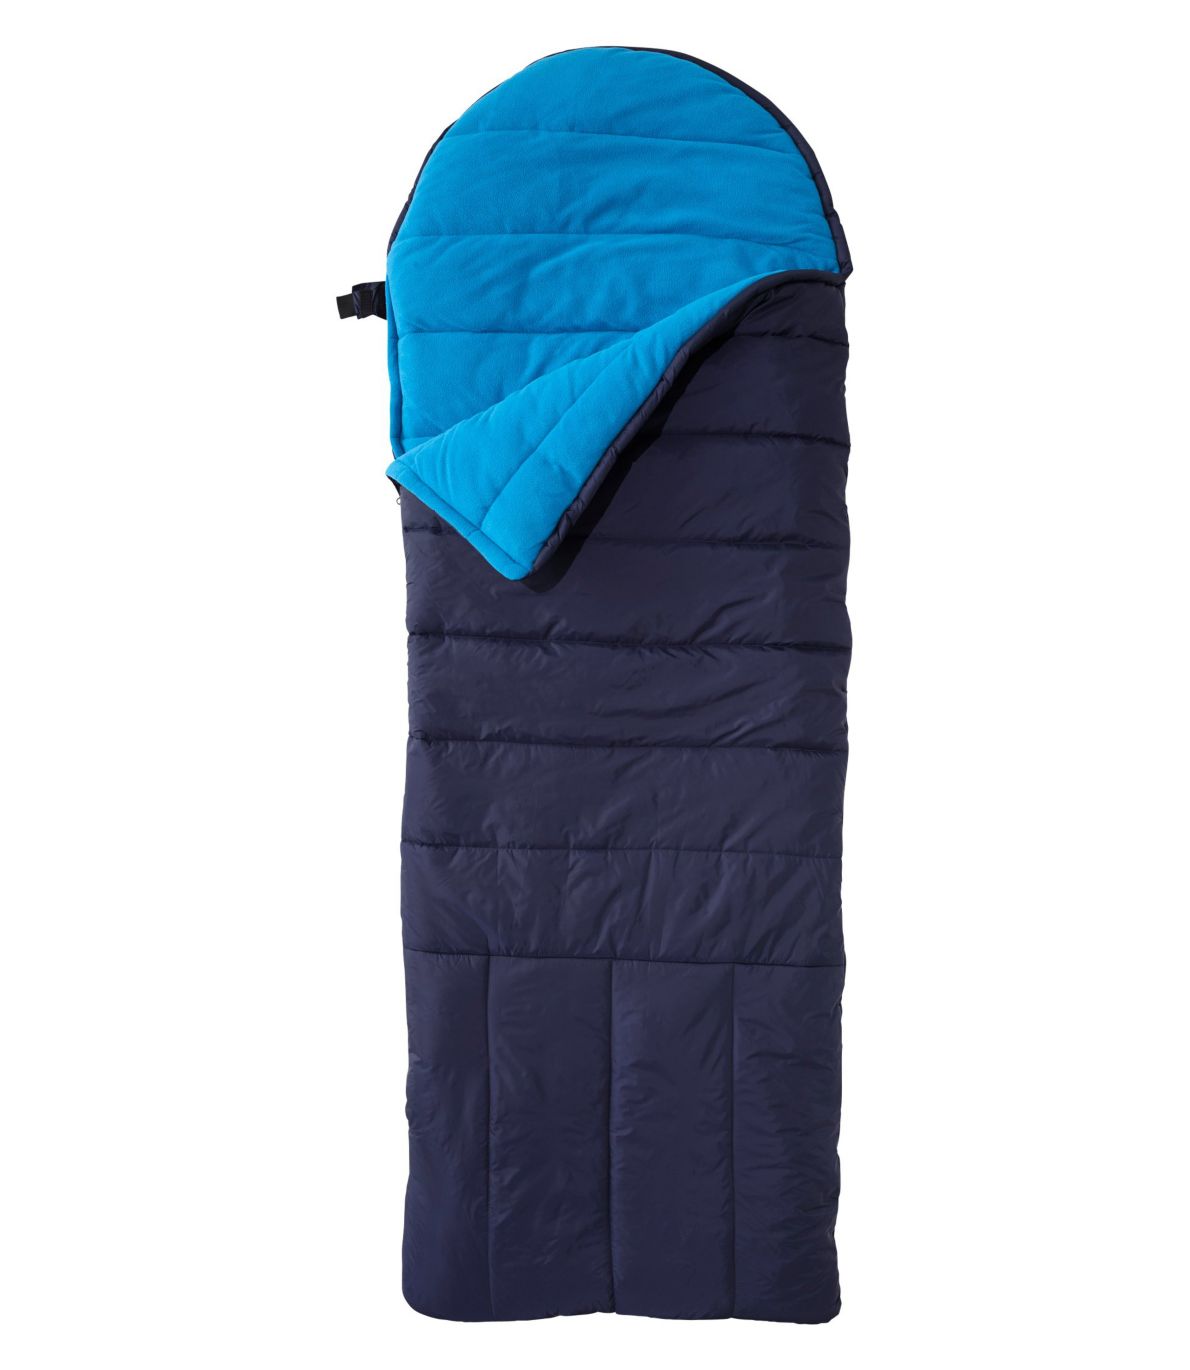 Kids' Deluxe Fleece-Lined Camp Bag, 30°